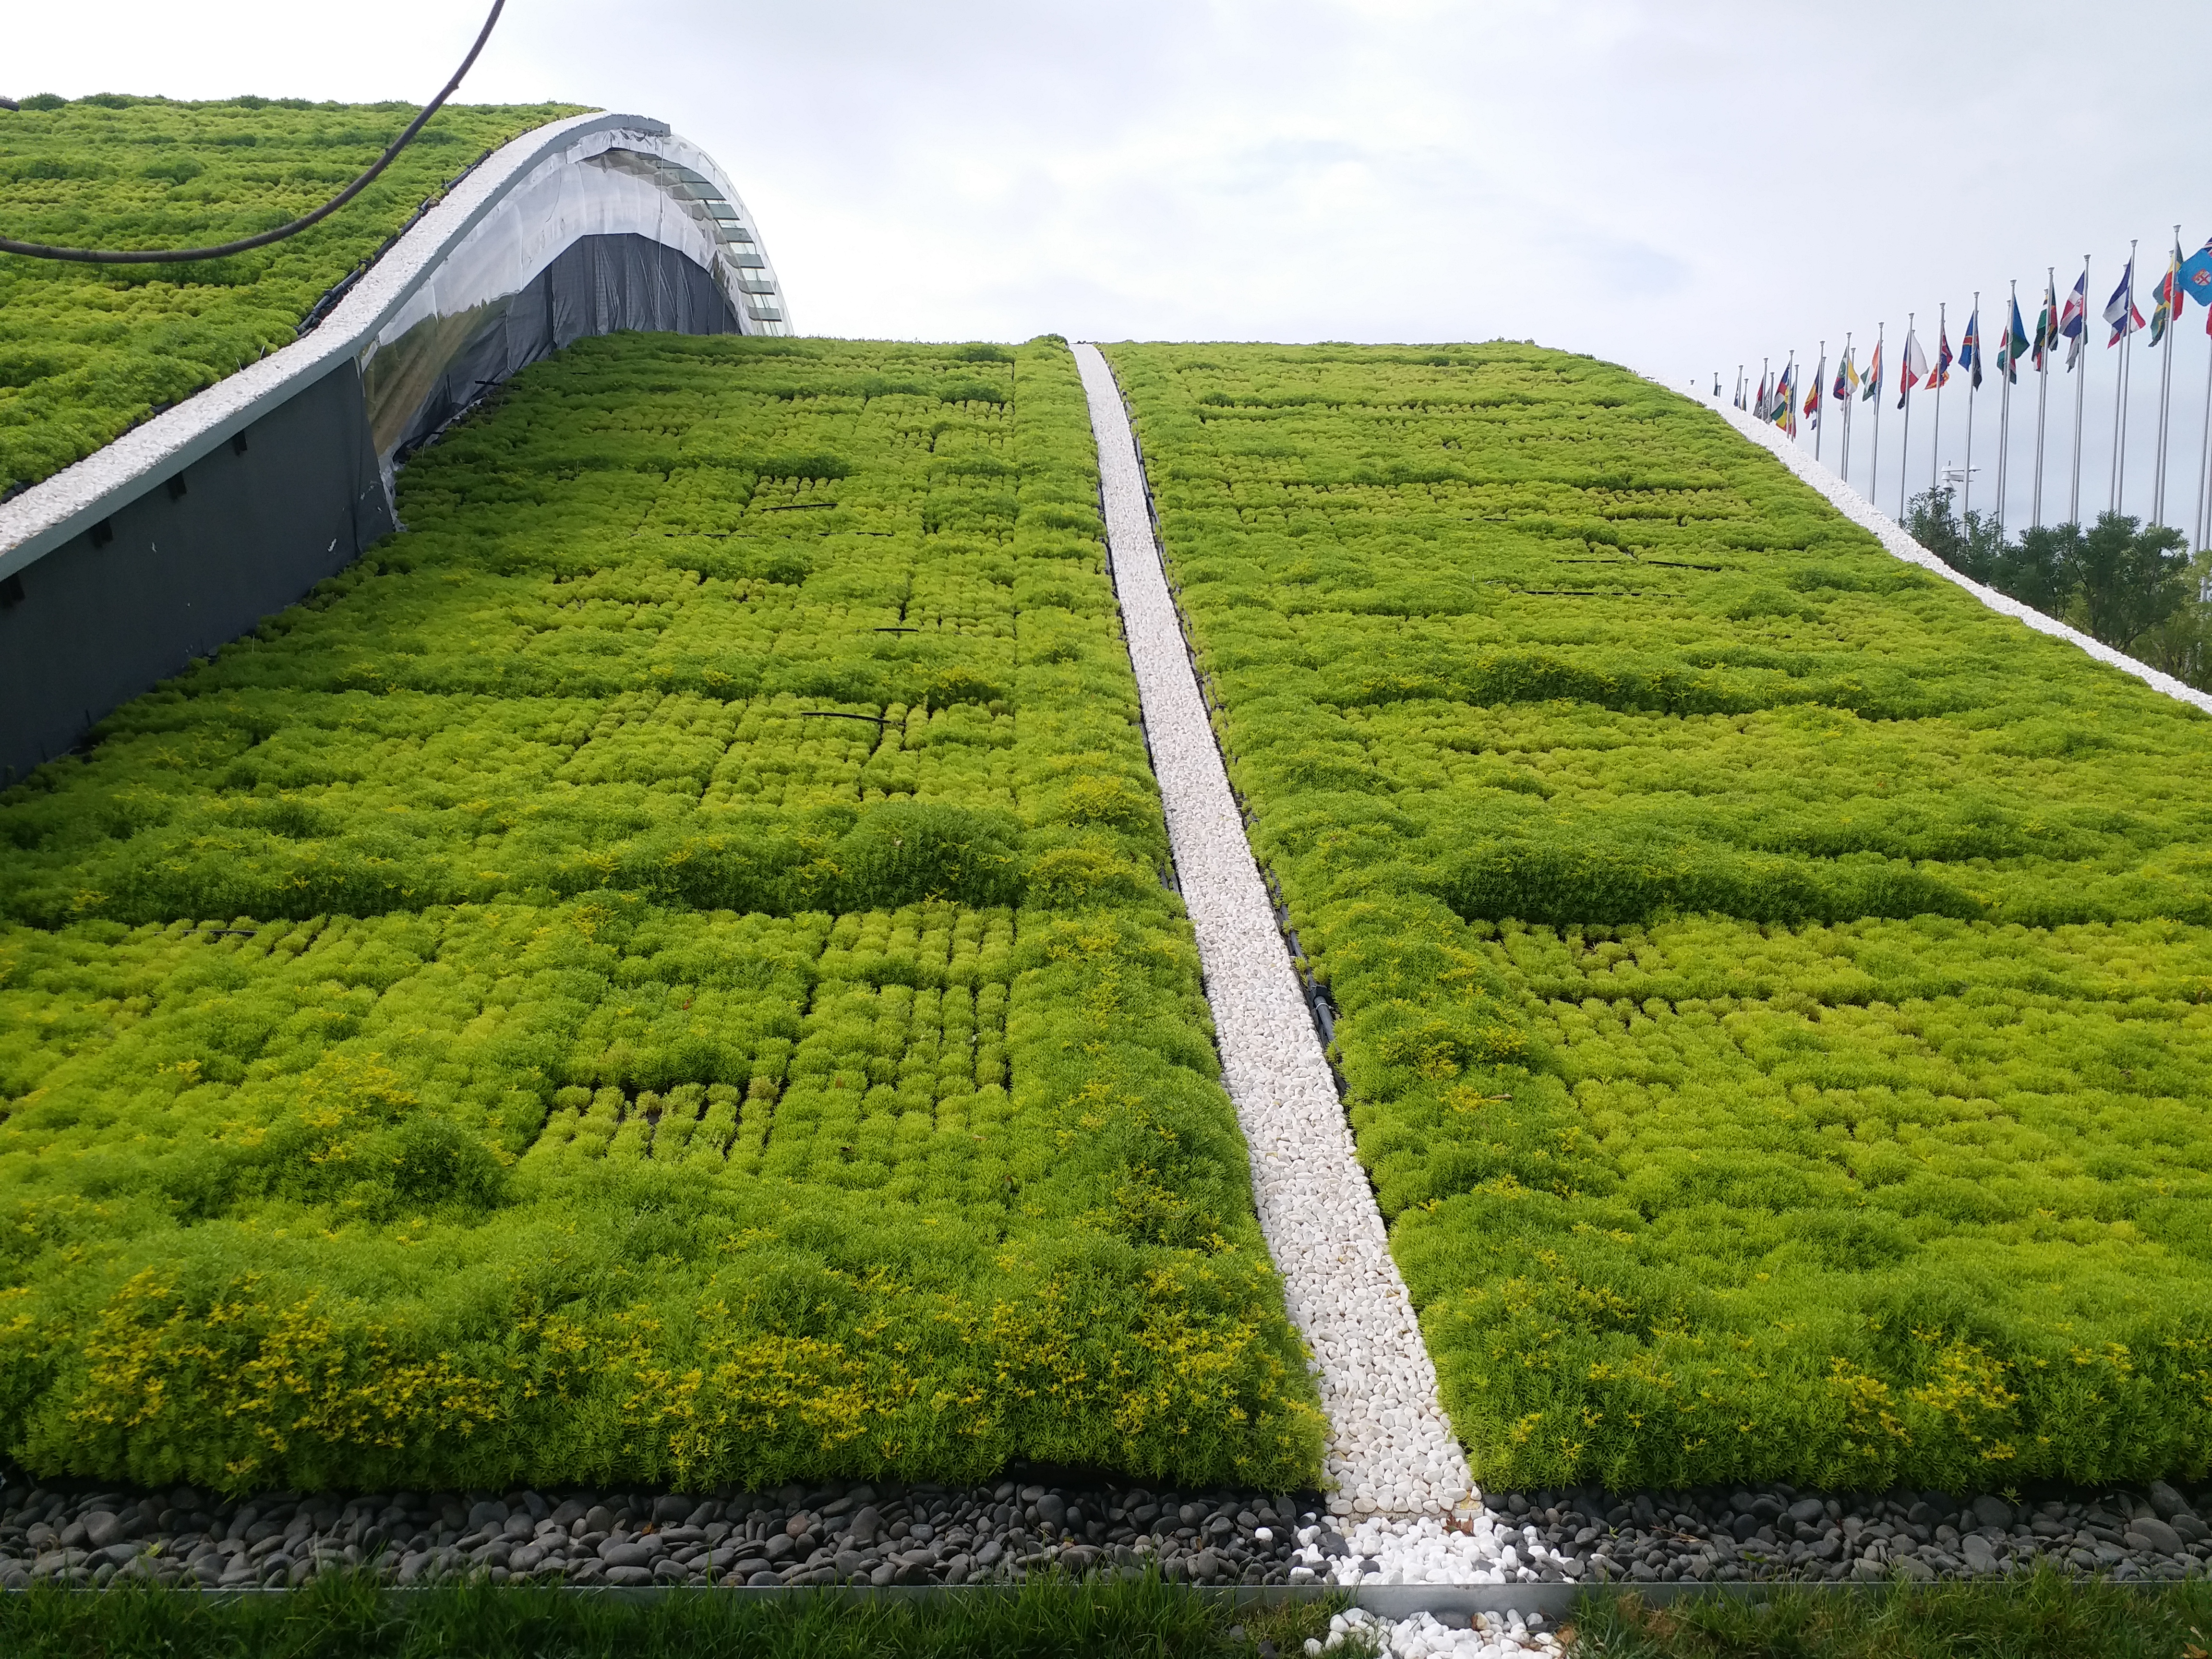 佛甲草常用作屋顶绿化、护坡绿化、立体花坛、绿雕、五色草造型上.jpg